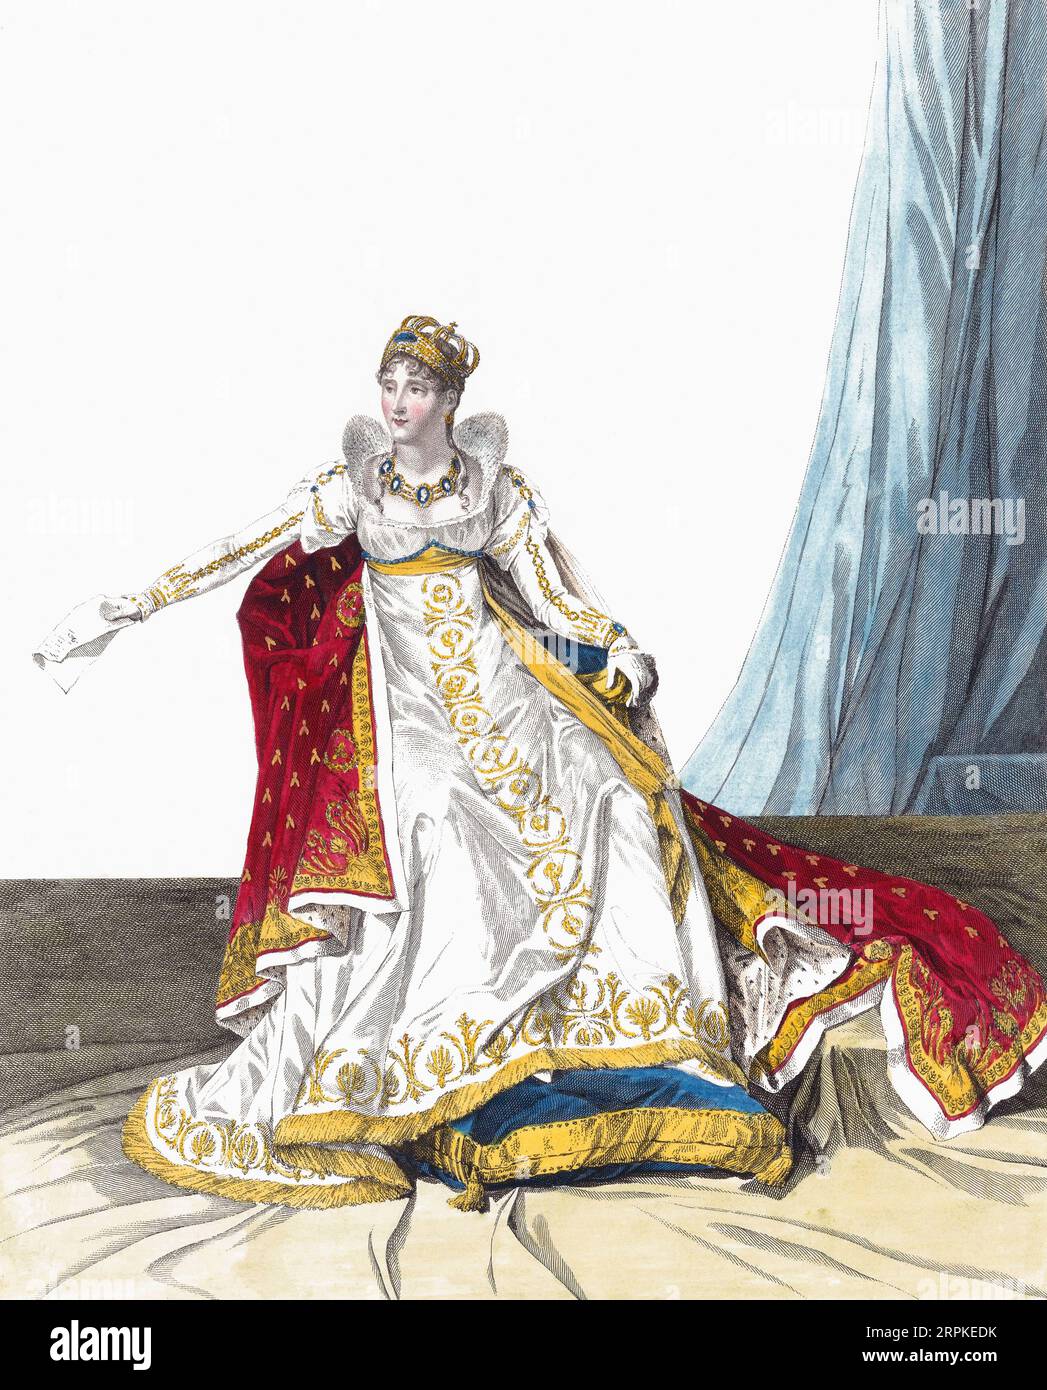 Imperatrice Joséphine, nata Marie Josèphe Rose Tascher de la Pagerie, 1763-1814. Prima moglie di Napoleone, e quindi la prima imperatrice dei francesi. Dopo un lavoro di Jean Louis Charles Pauquet. Foto Stock